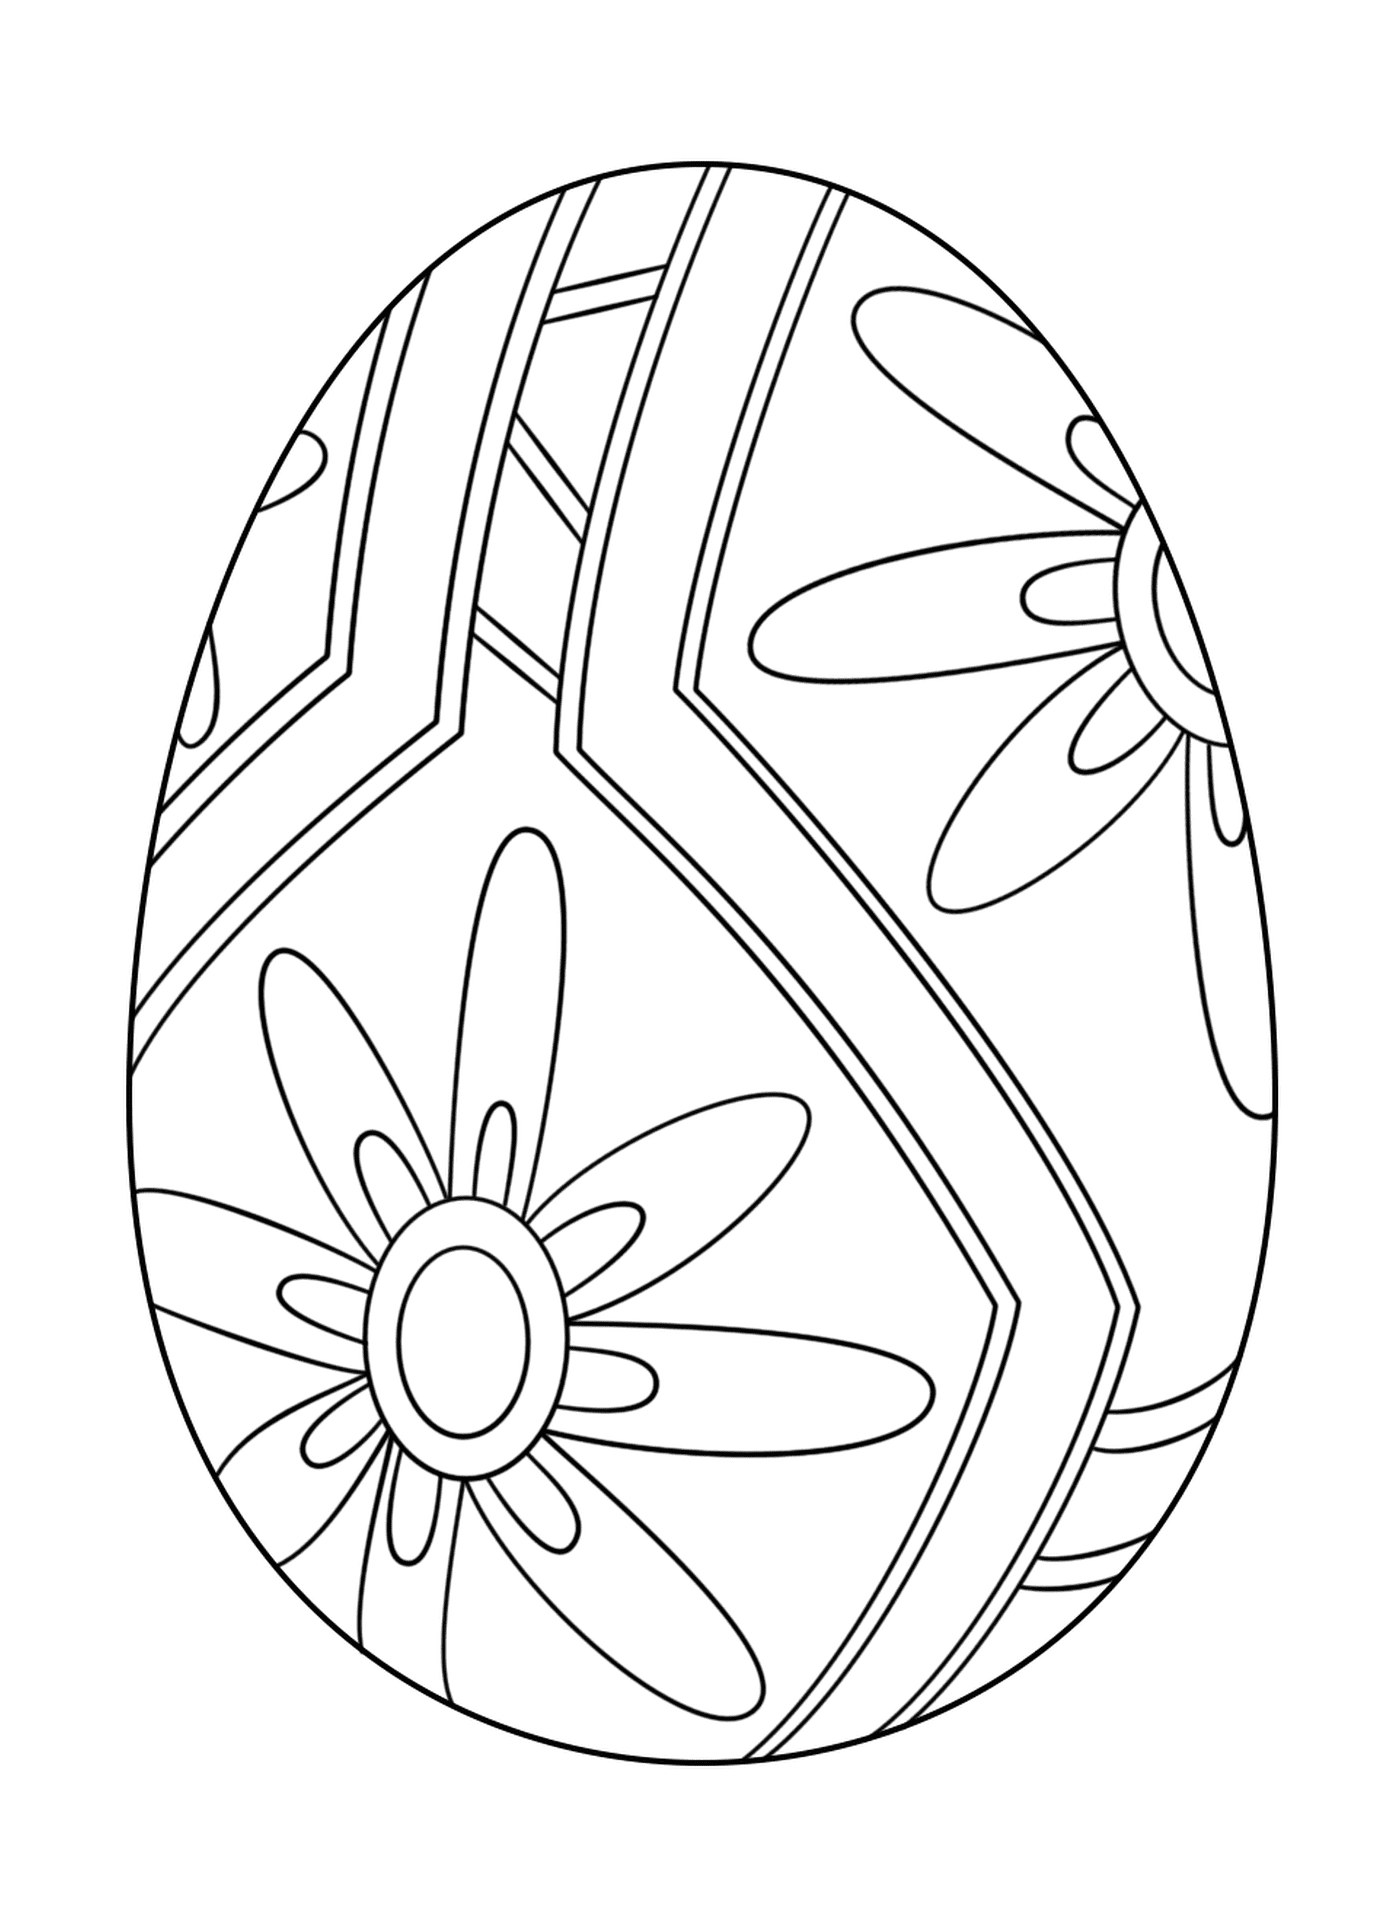  Ovo de Páscoa com padrão floral 1 